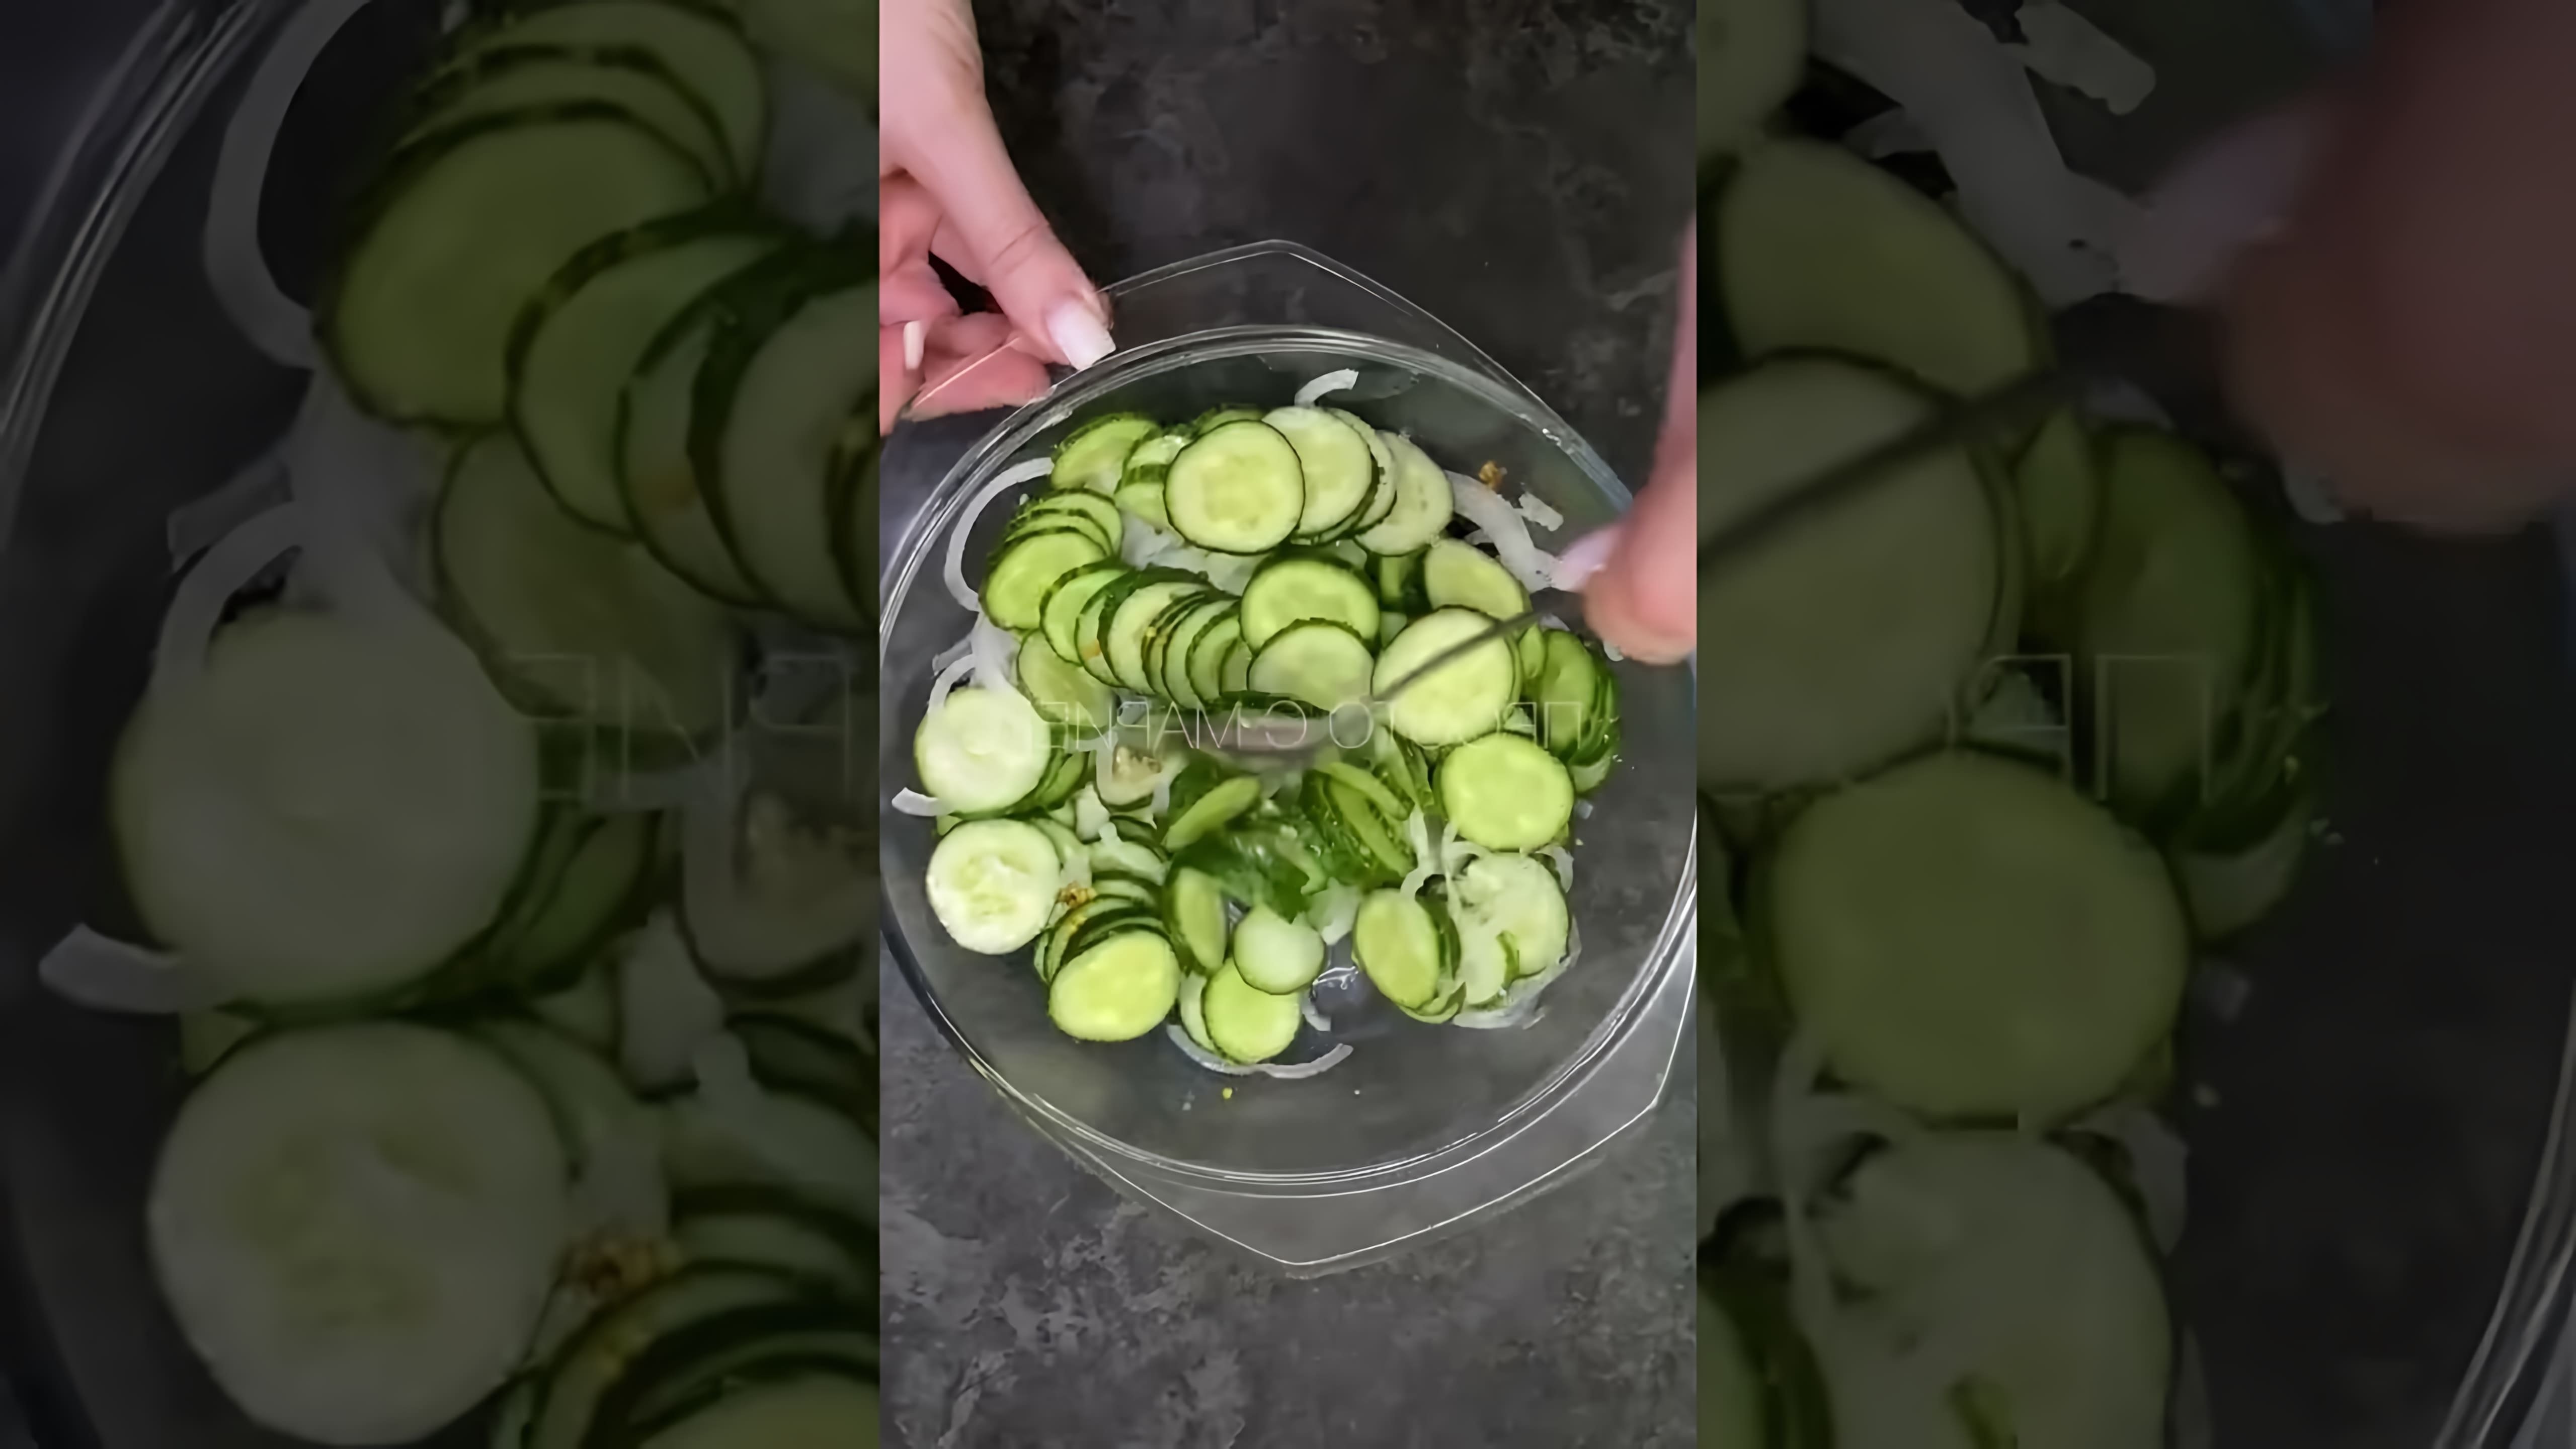 В этом видео демонстрируется рецепт приготовления огурцов, которые напоминают по вкусу огурцы из Макдональдса